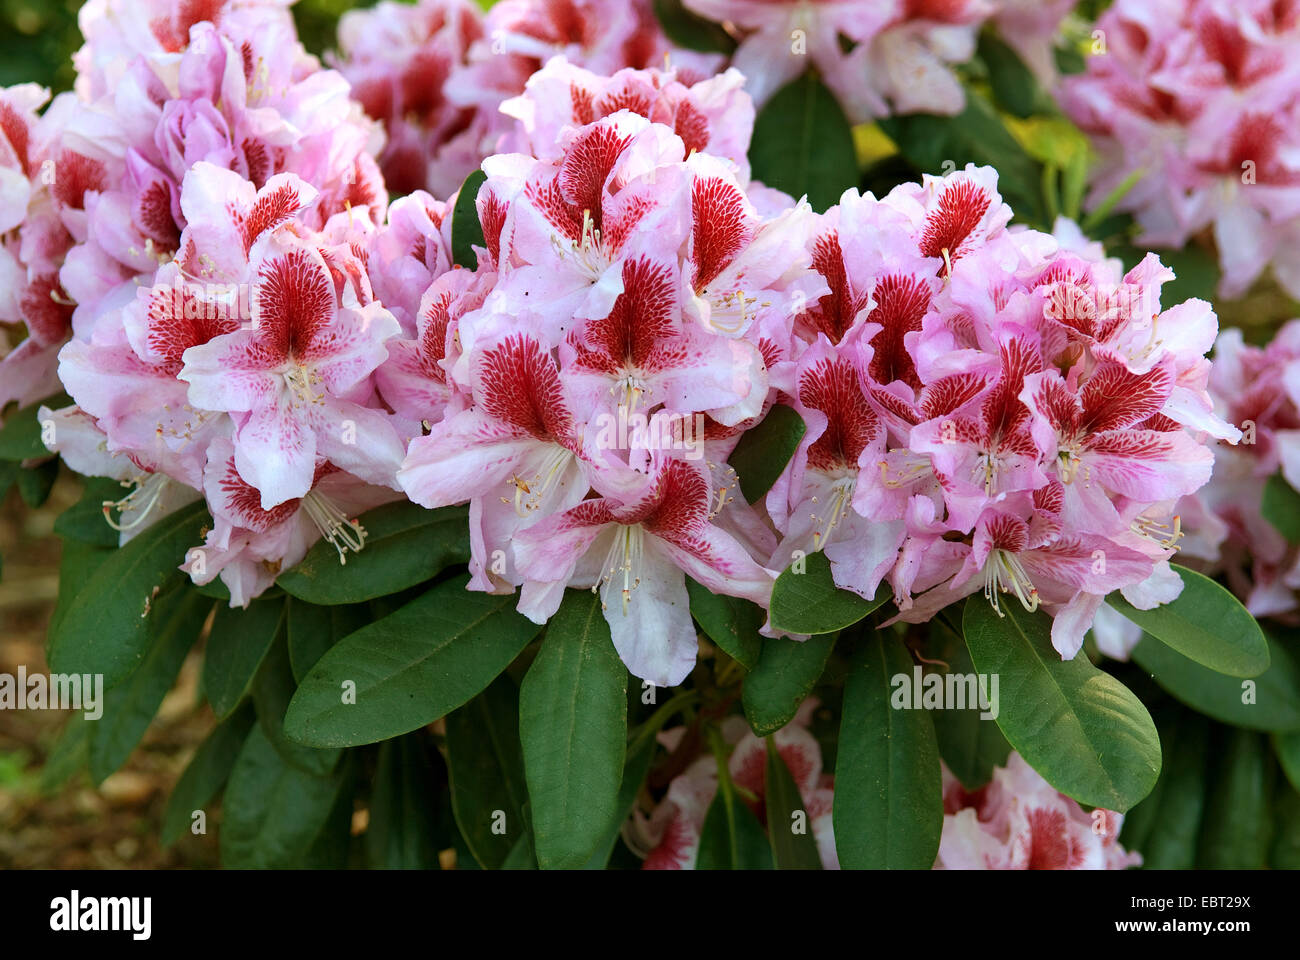 rhododendron (Rhododendron 'Belami', Rhododendron Belami), cultivar Belami Stock Photo